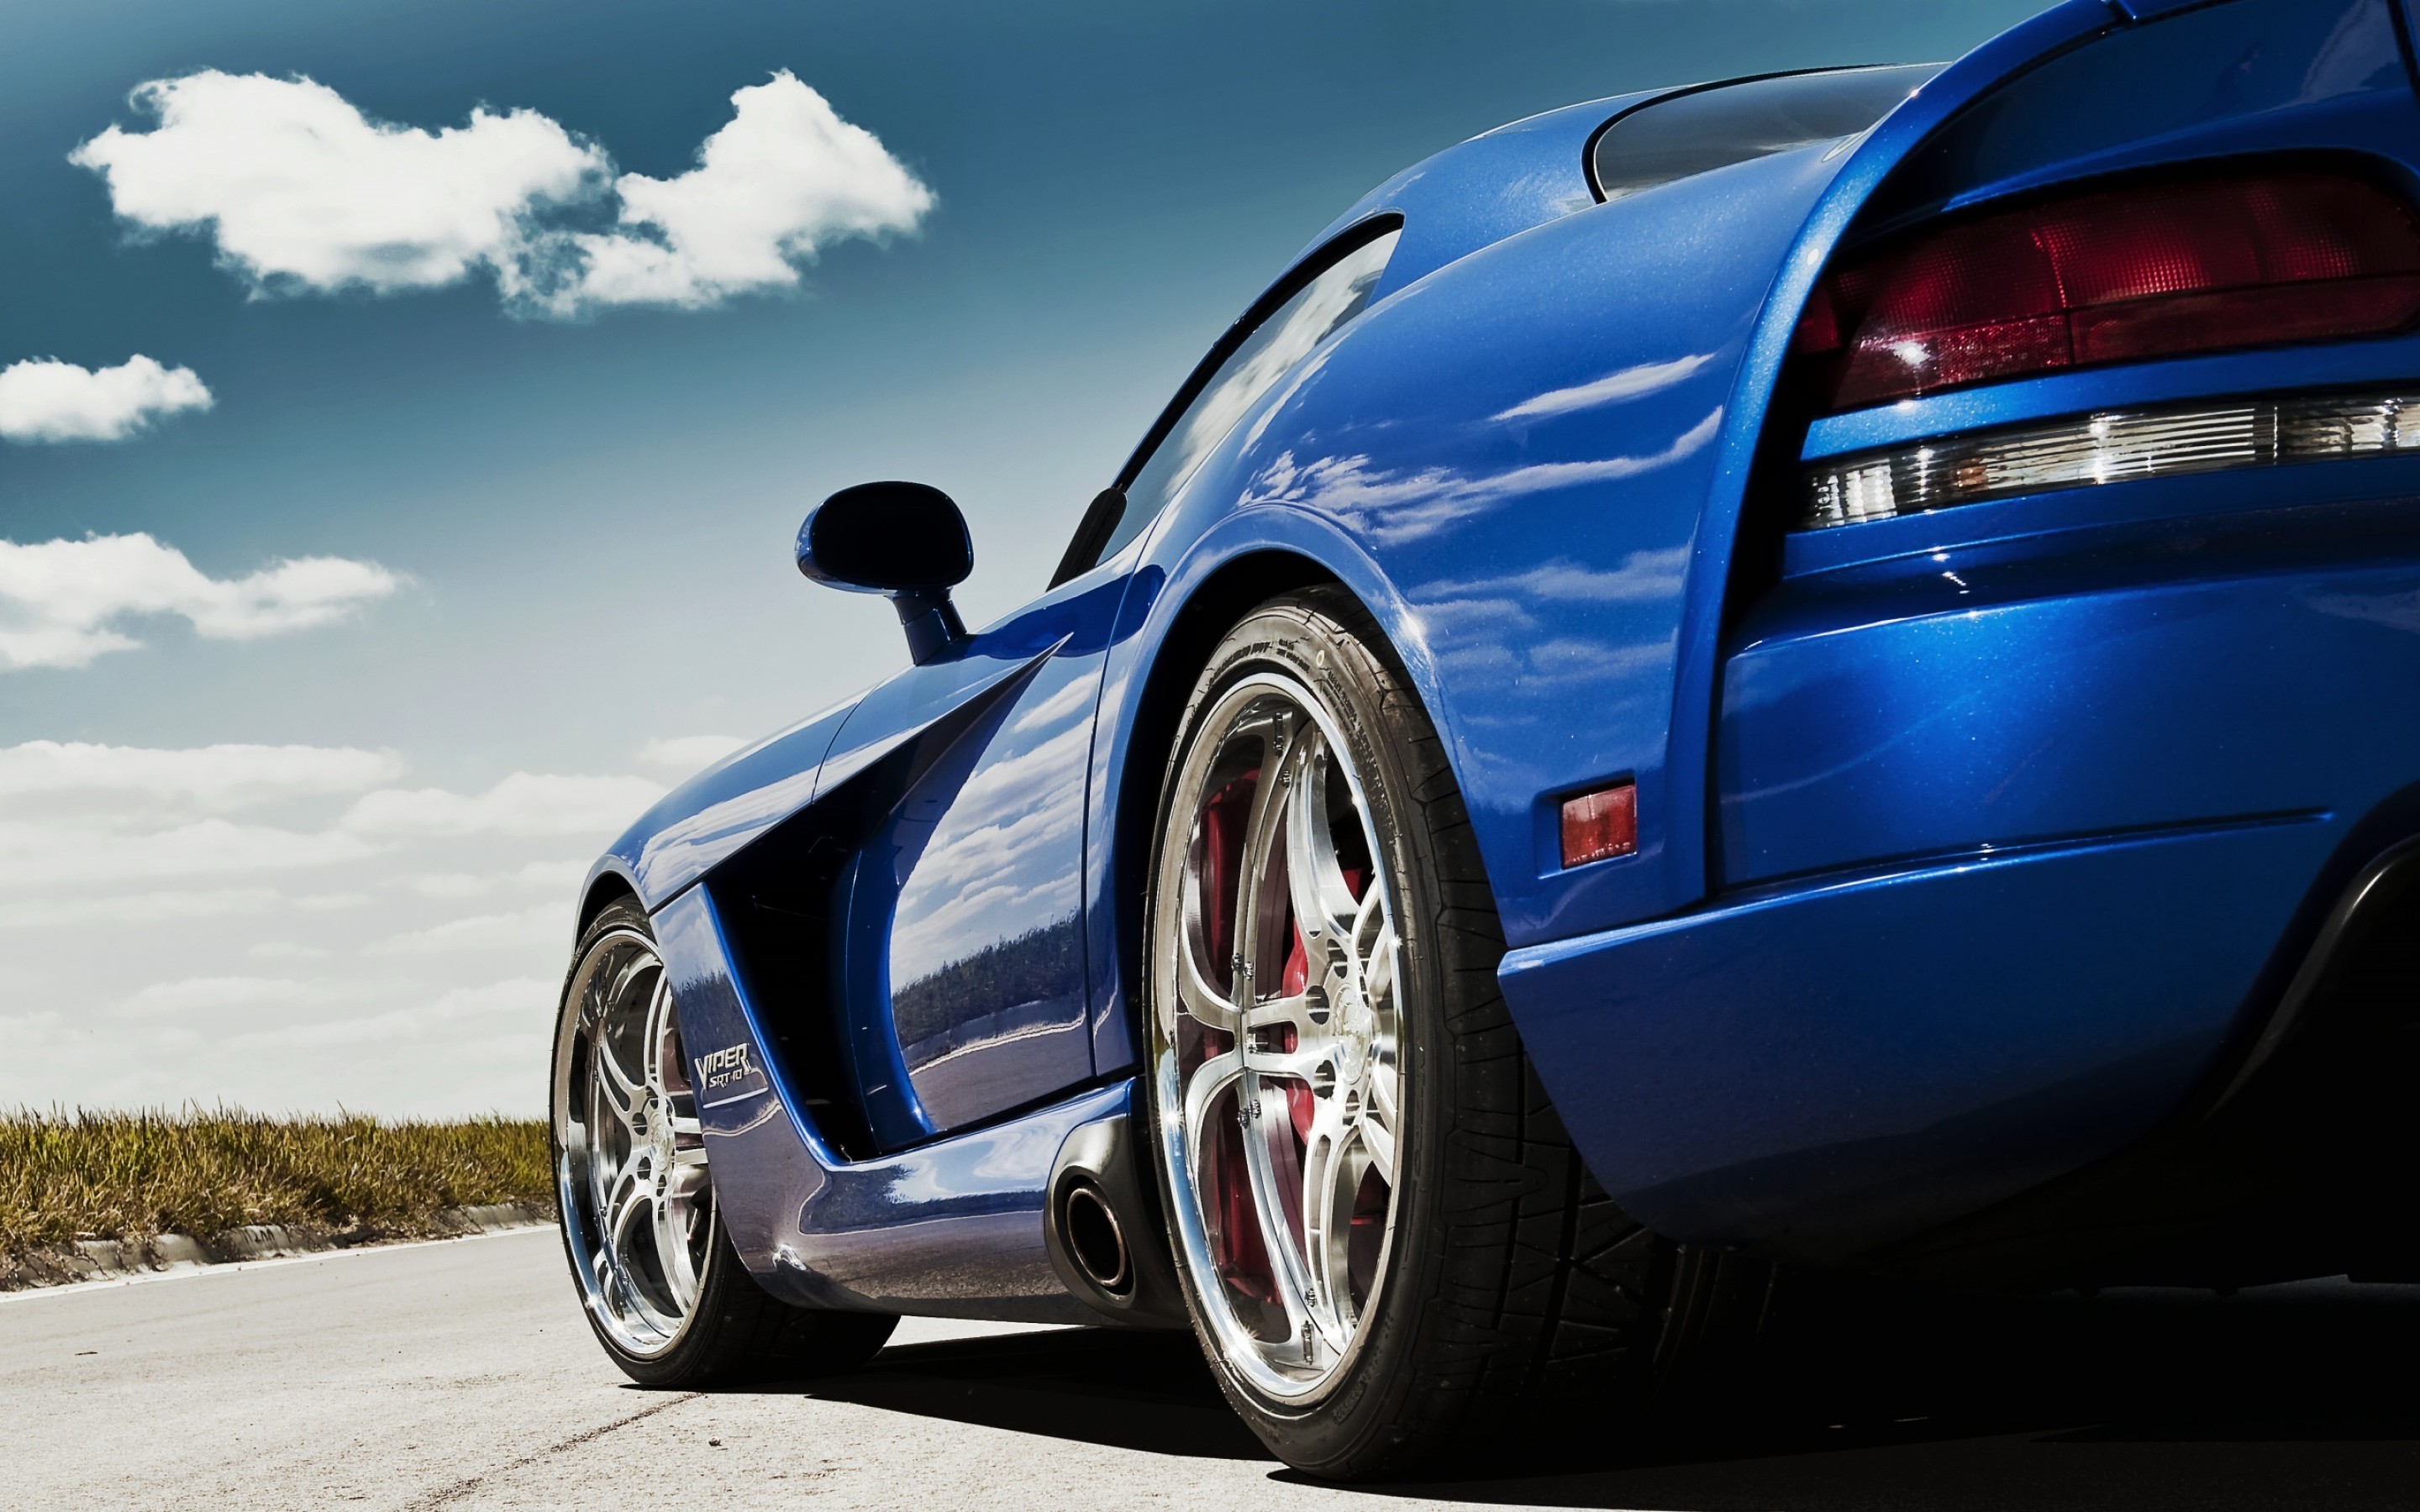 Красивая заставка машины. Красивые машины. Обои автомобили. Спортивные машины. Машины (синяя).